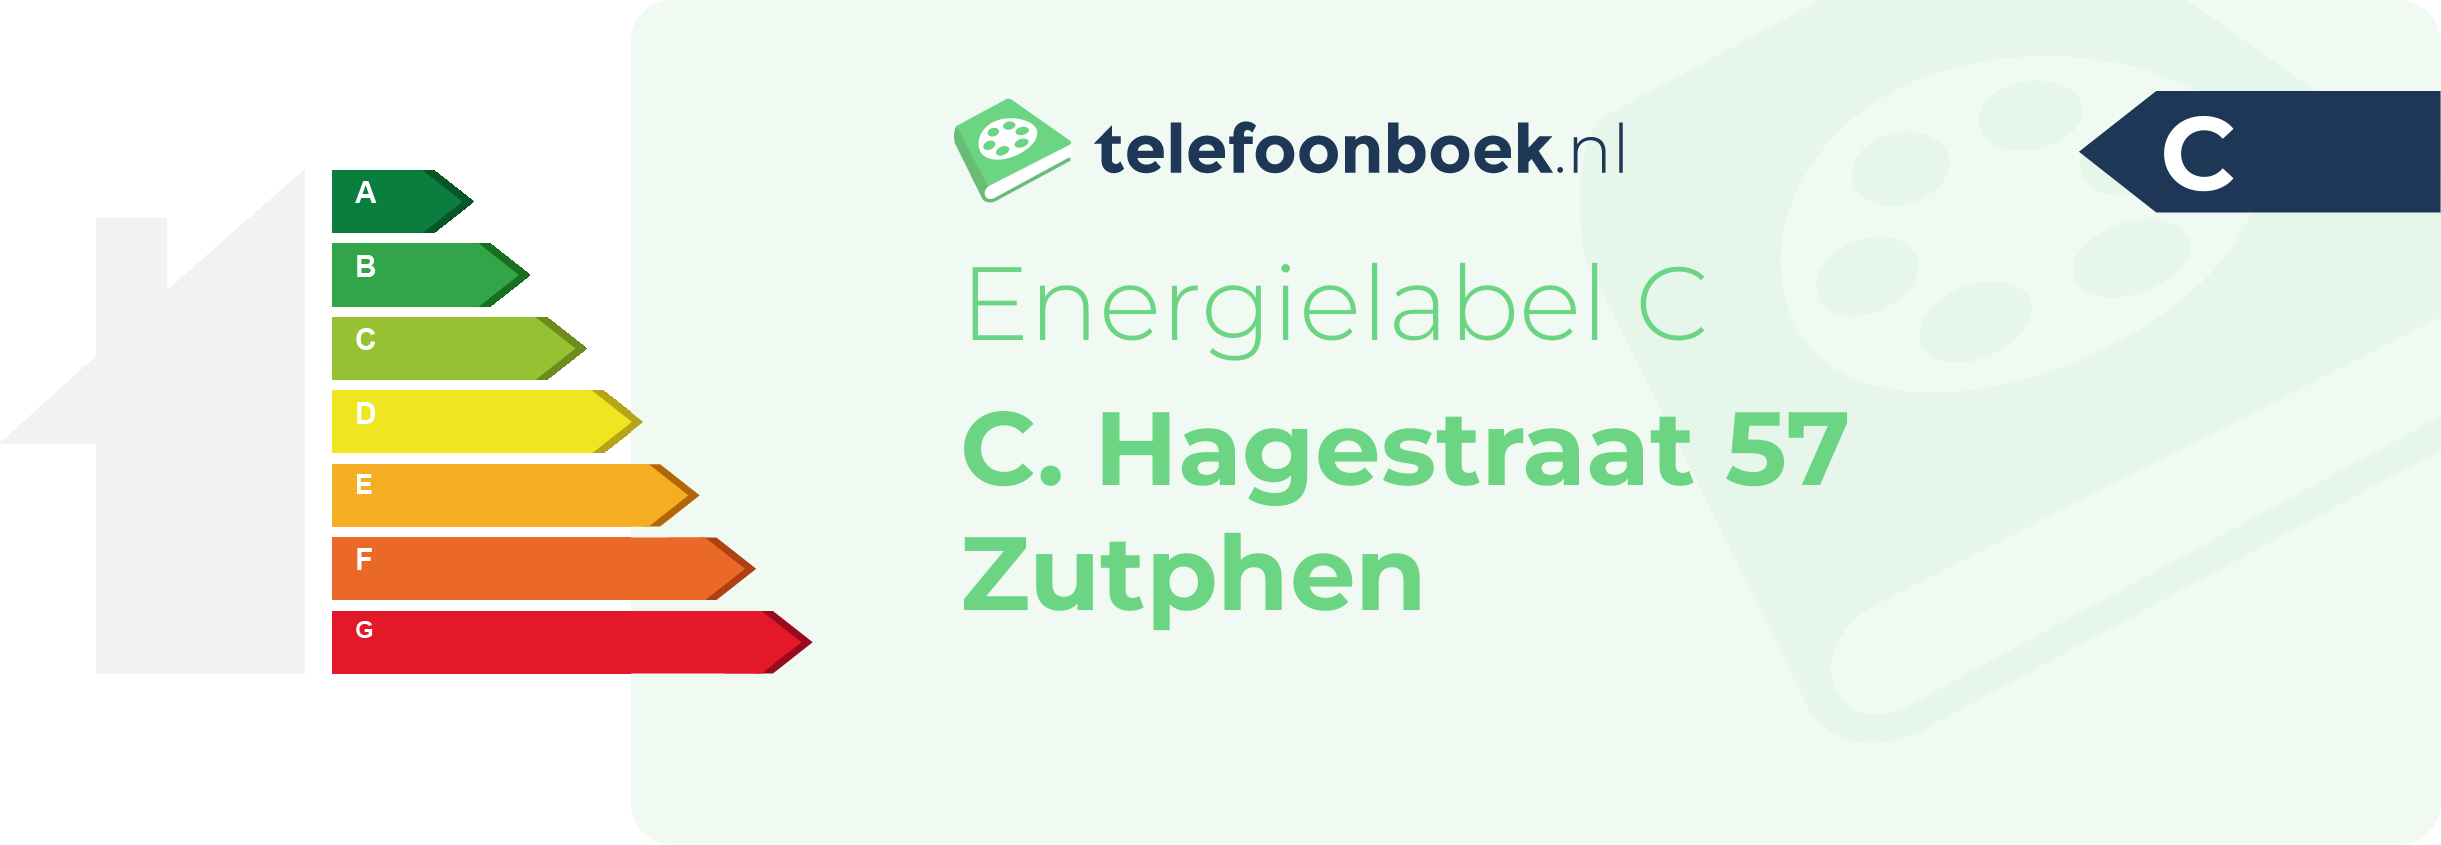 Energielabel C. Hagestraat 57 Zutphen